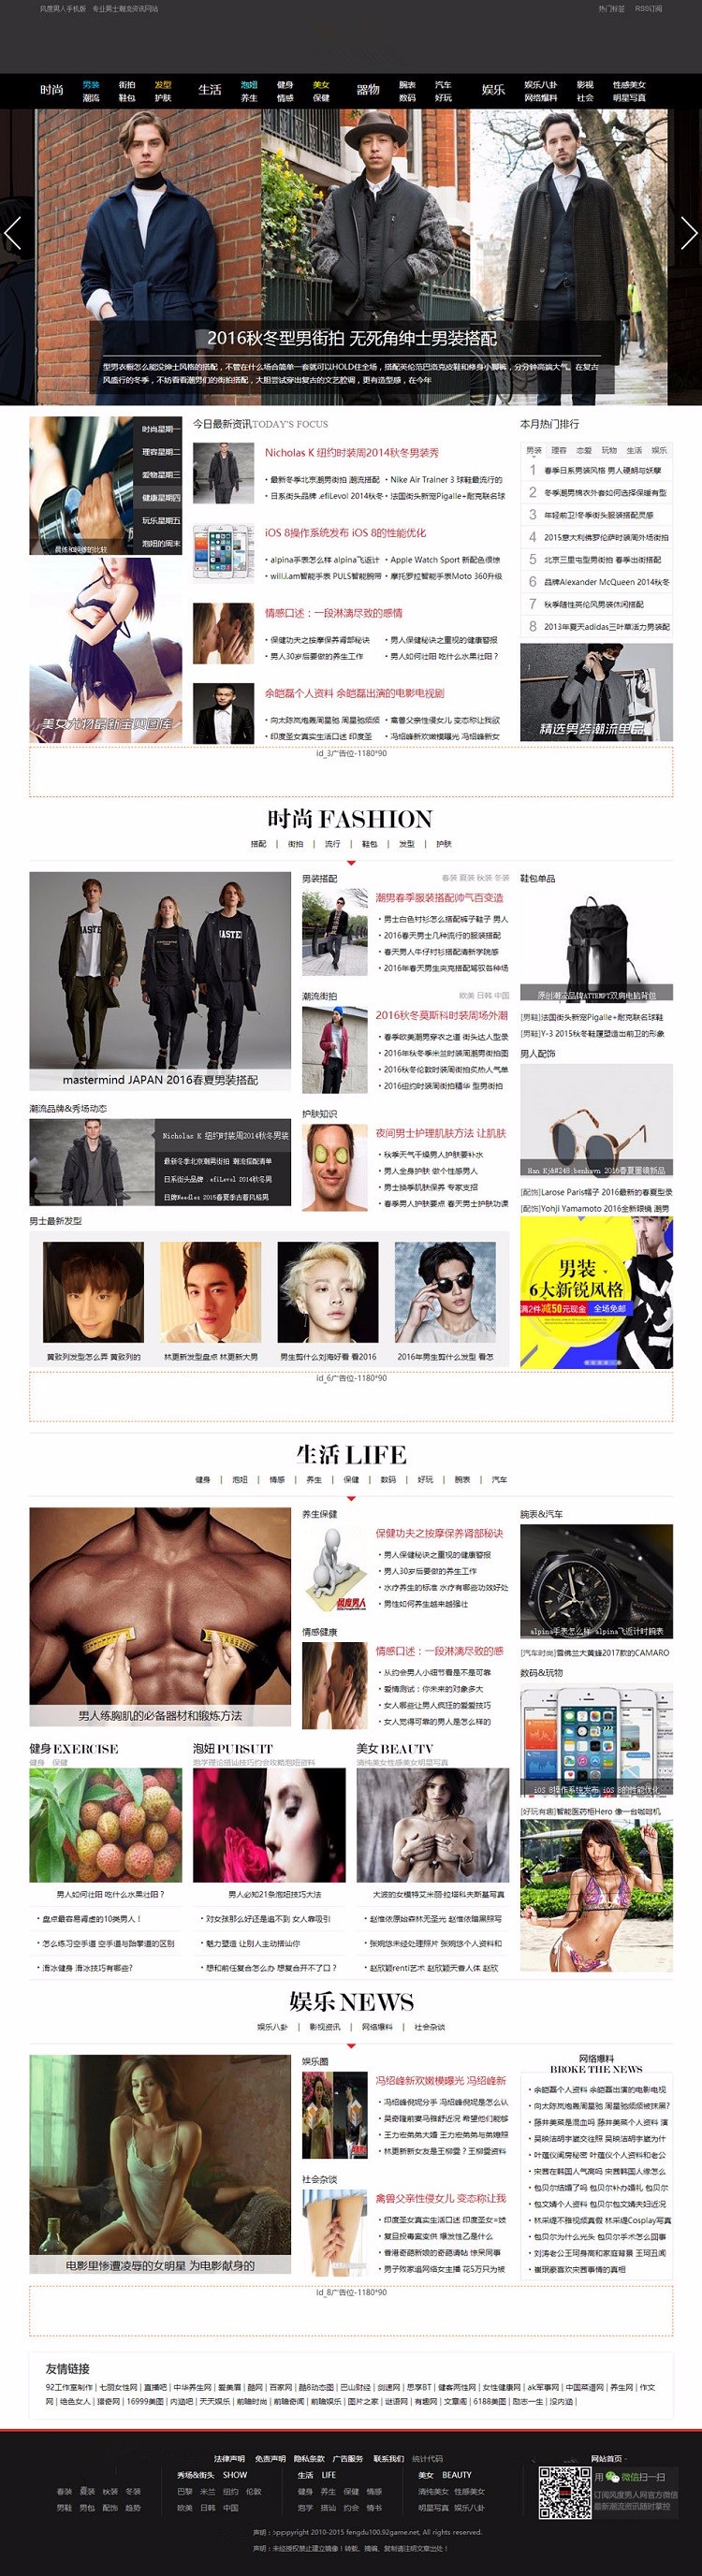 92kaifa男士时尚流行服饰网站模板 帝国源码 带手机版